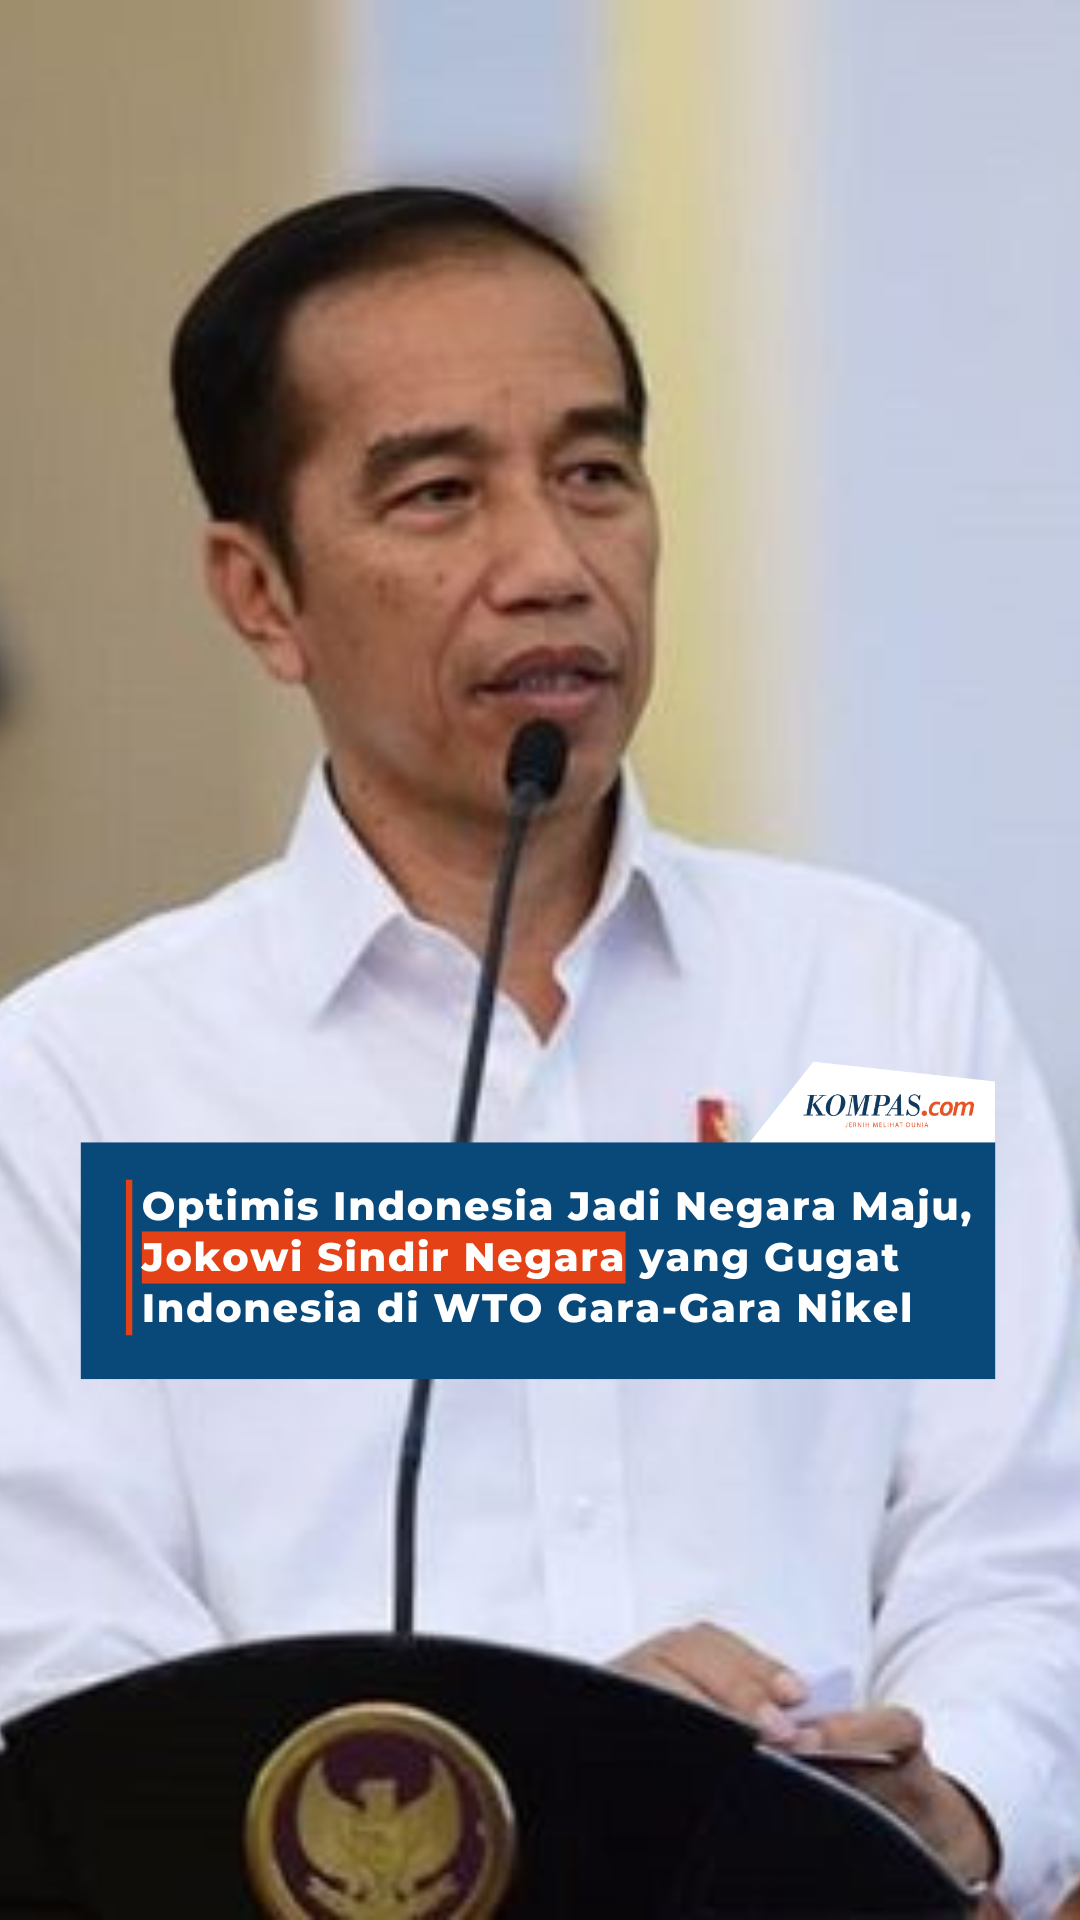 Jokowi Optimis Indonesia Bisa Maju di 2045